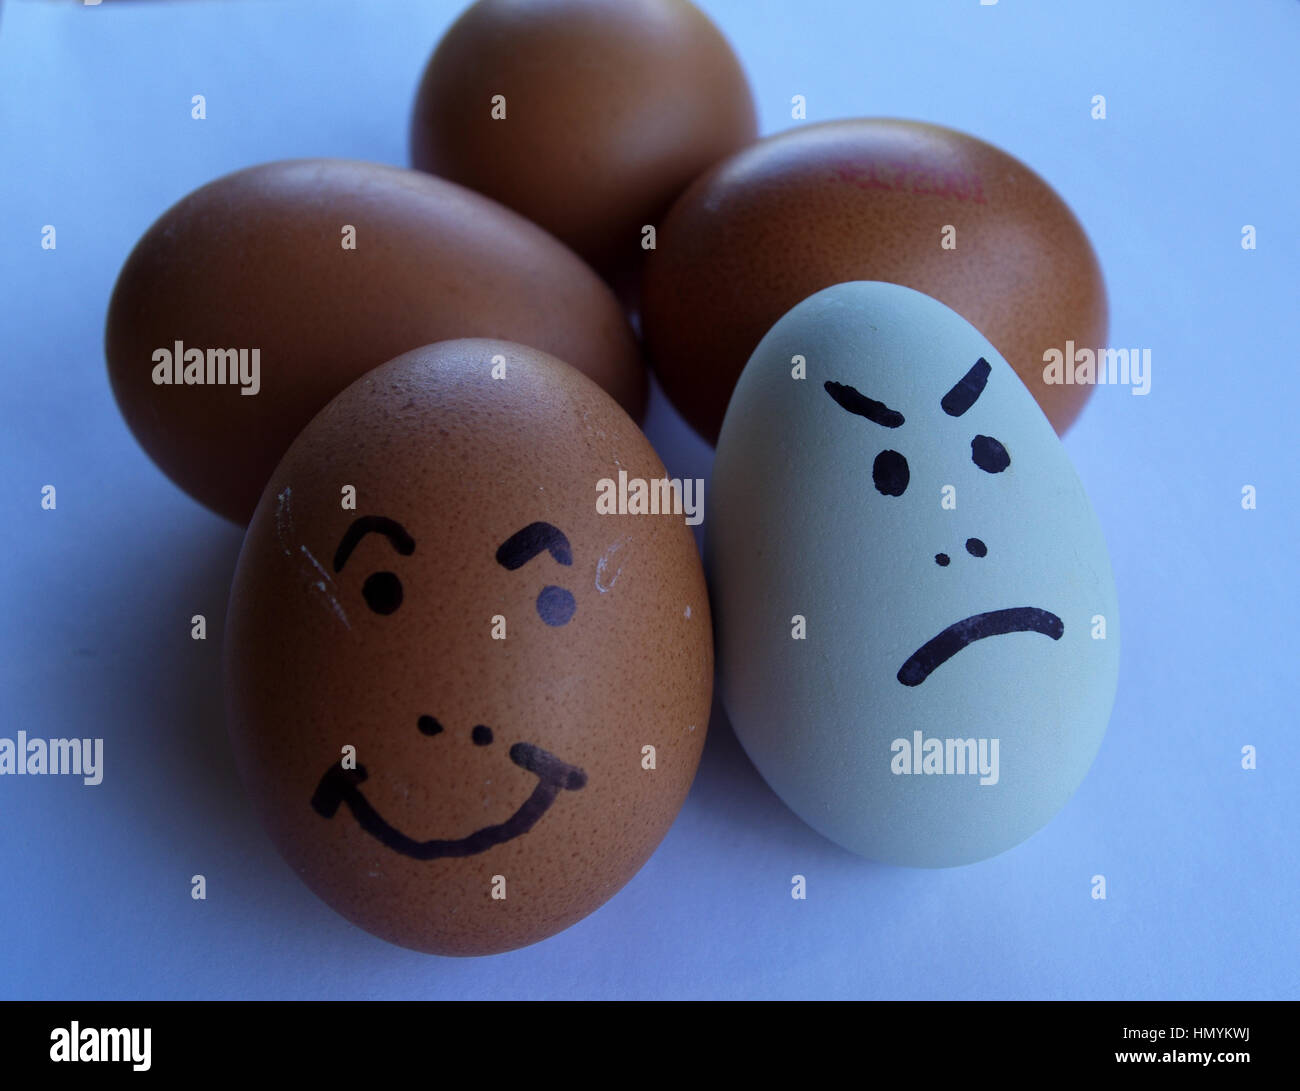 Buona scelta libera di uovo versus bad store hanno acquistato le uova Foto Stock